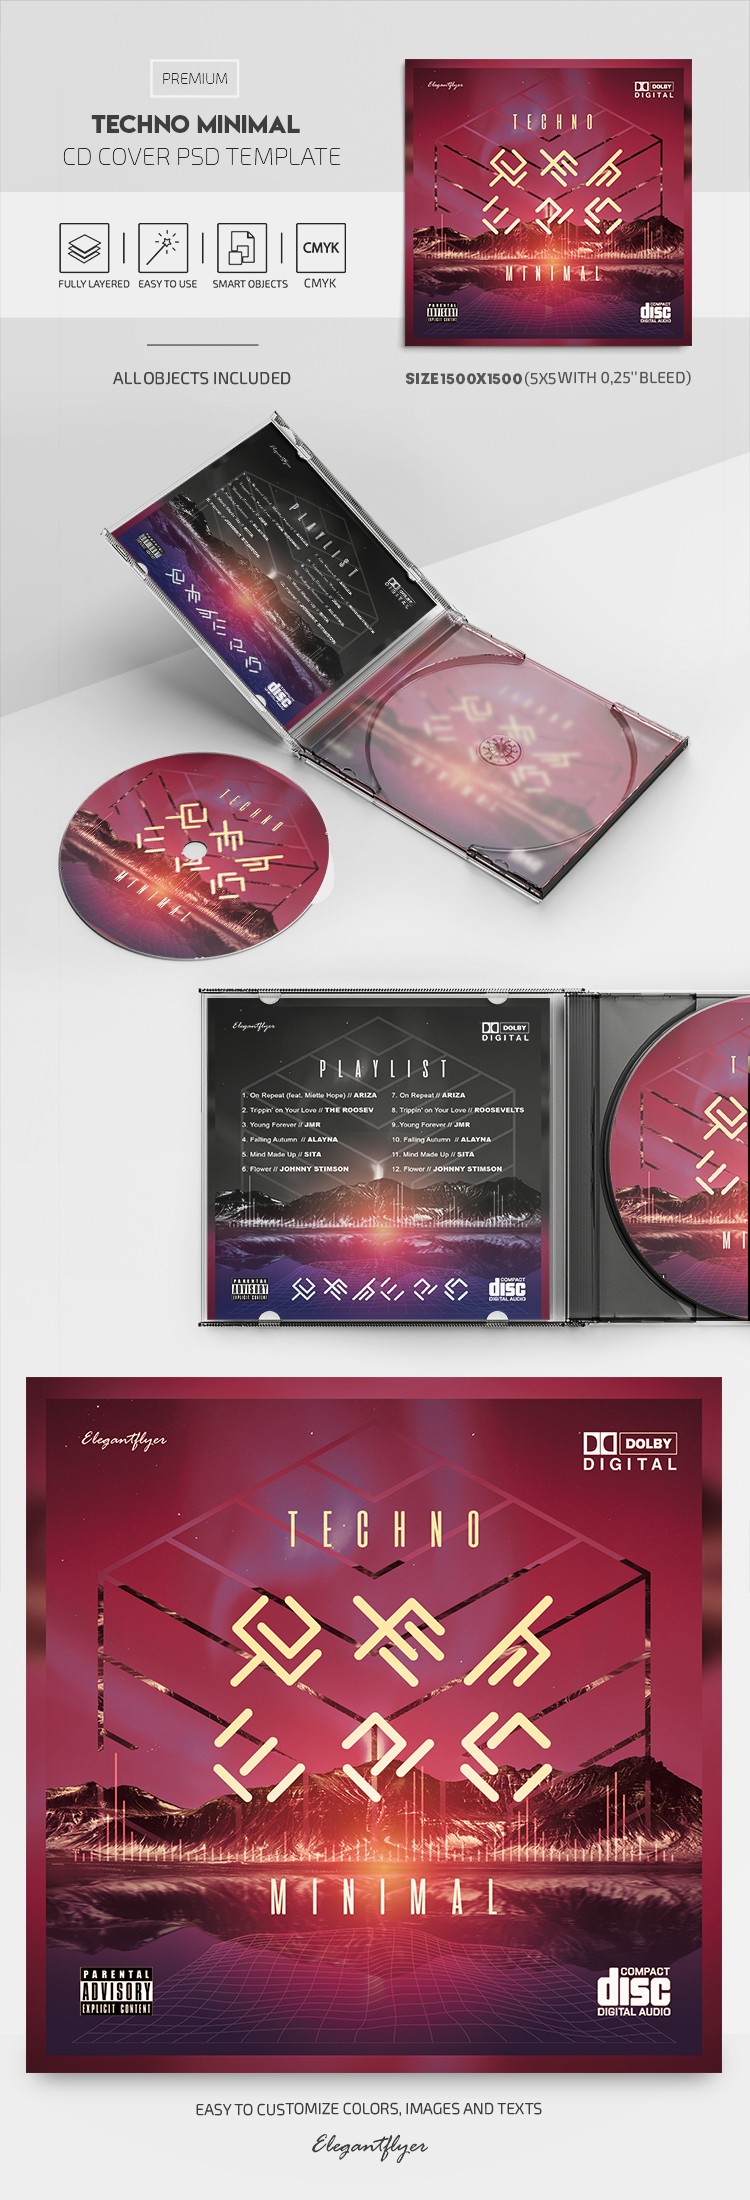 Capa do CD Techno Minimal by ElegantFlyer